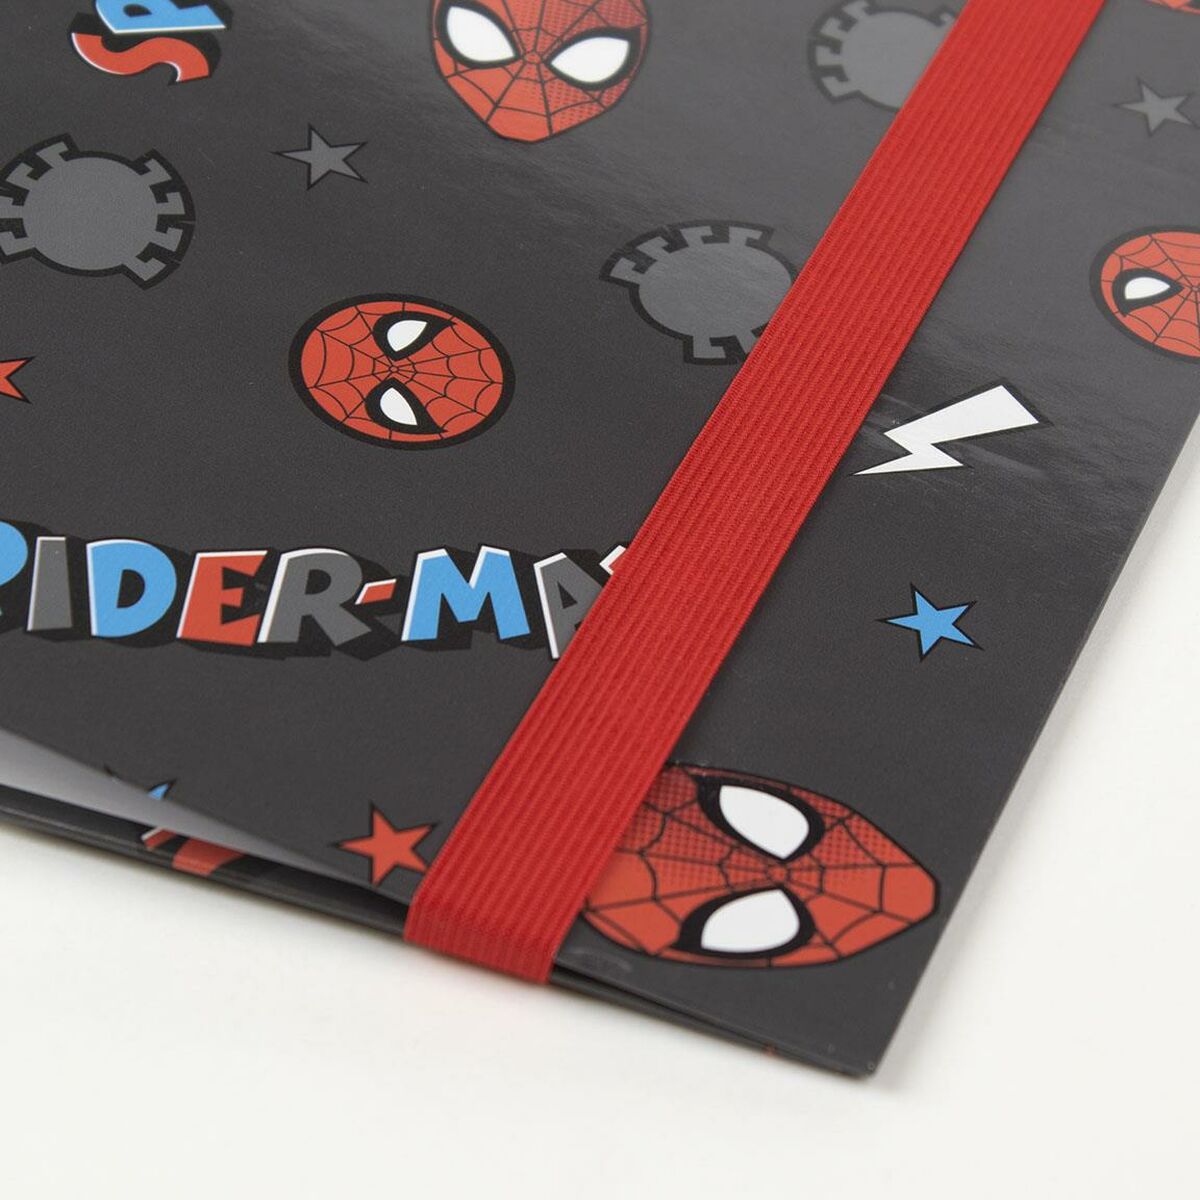 Biblioraft Spiderman A4 Negru (26 x 32 x 4 cm)